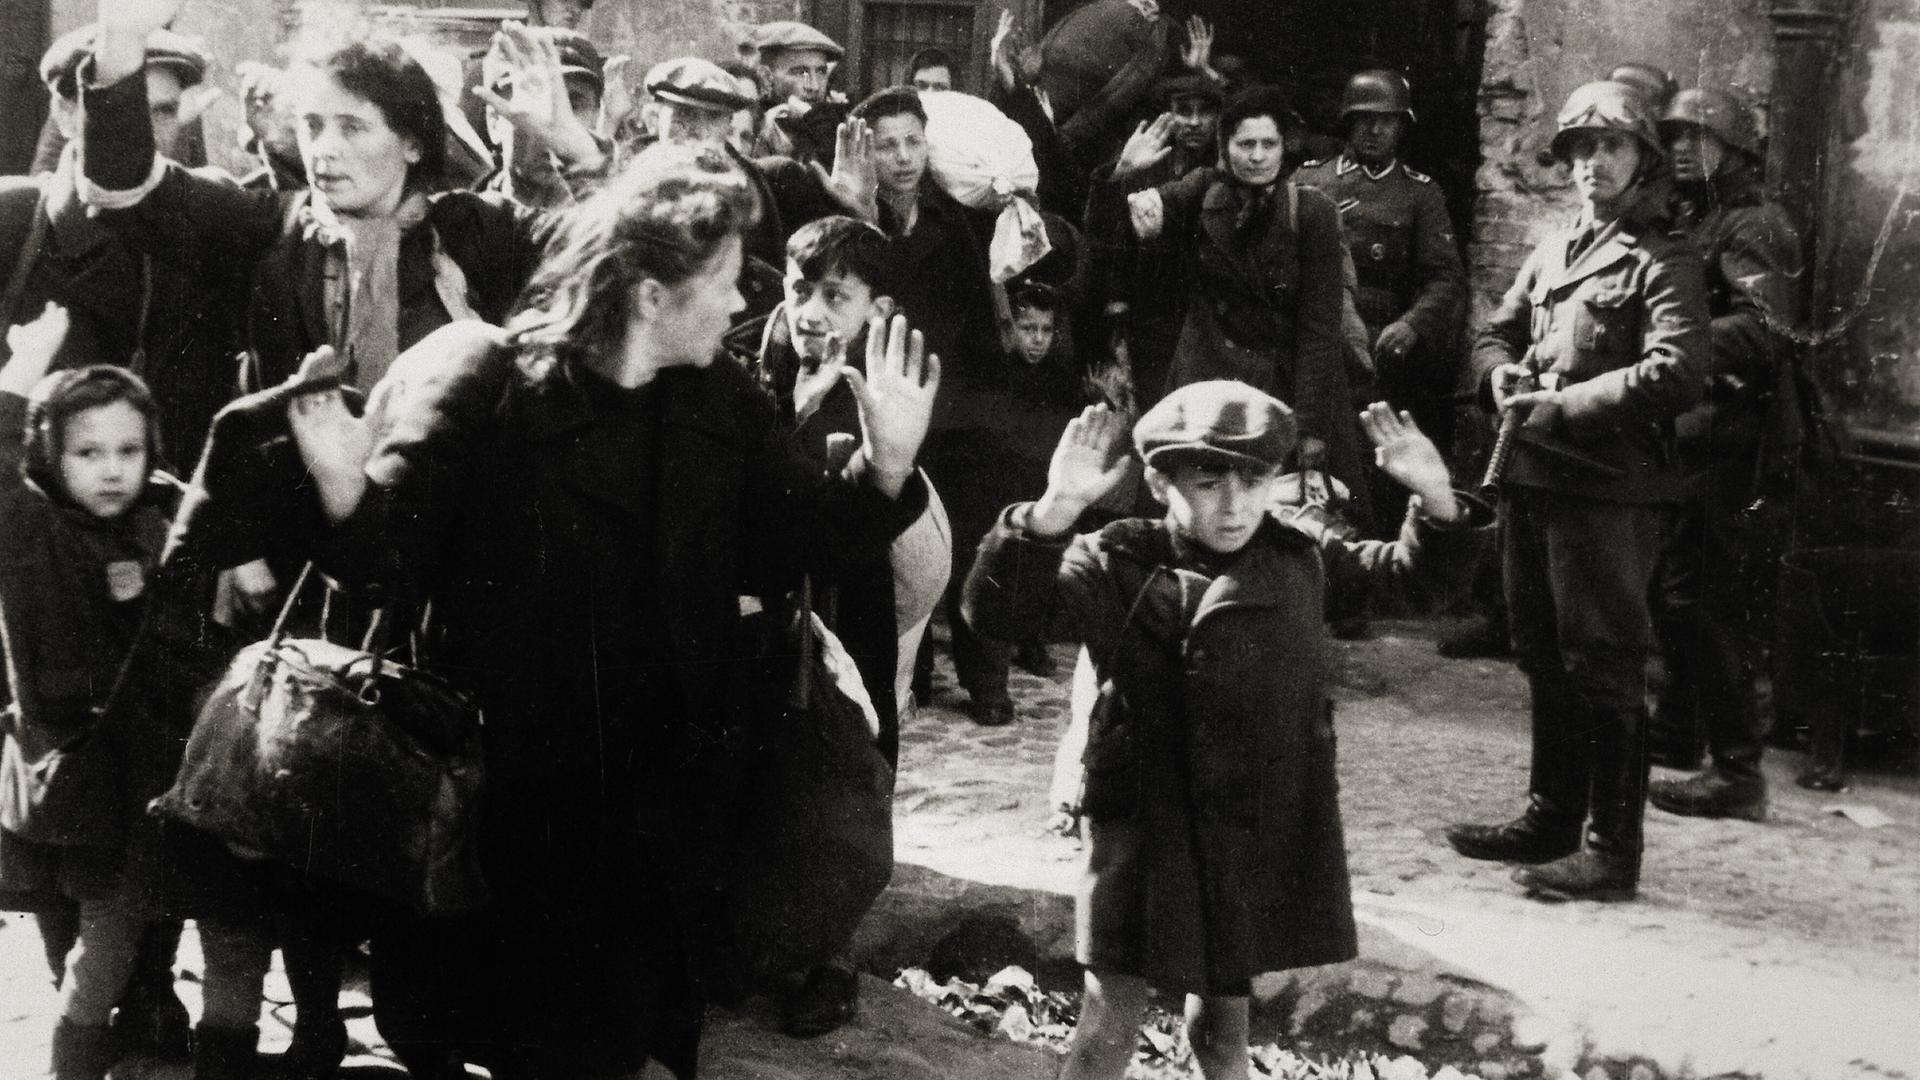 Warschauer Ghettoaufstand April/Mai 1943: Kleiner Junge mit erhobenen Händen, Frauen und andere Kinder kommen aus einem von den deutschen Truppen eroberten Haus.